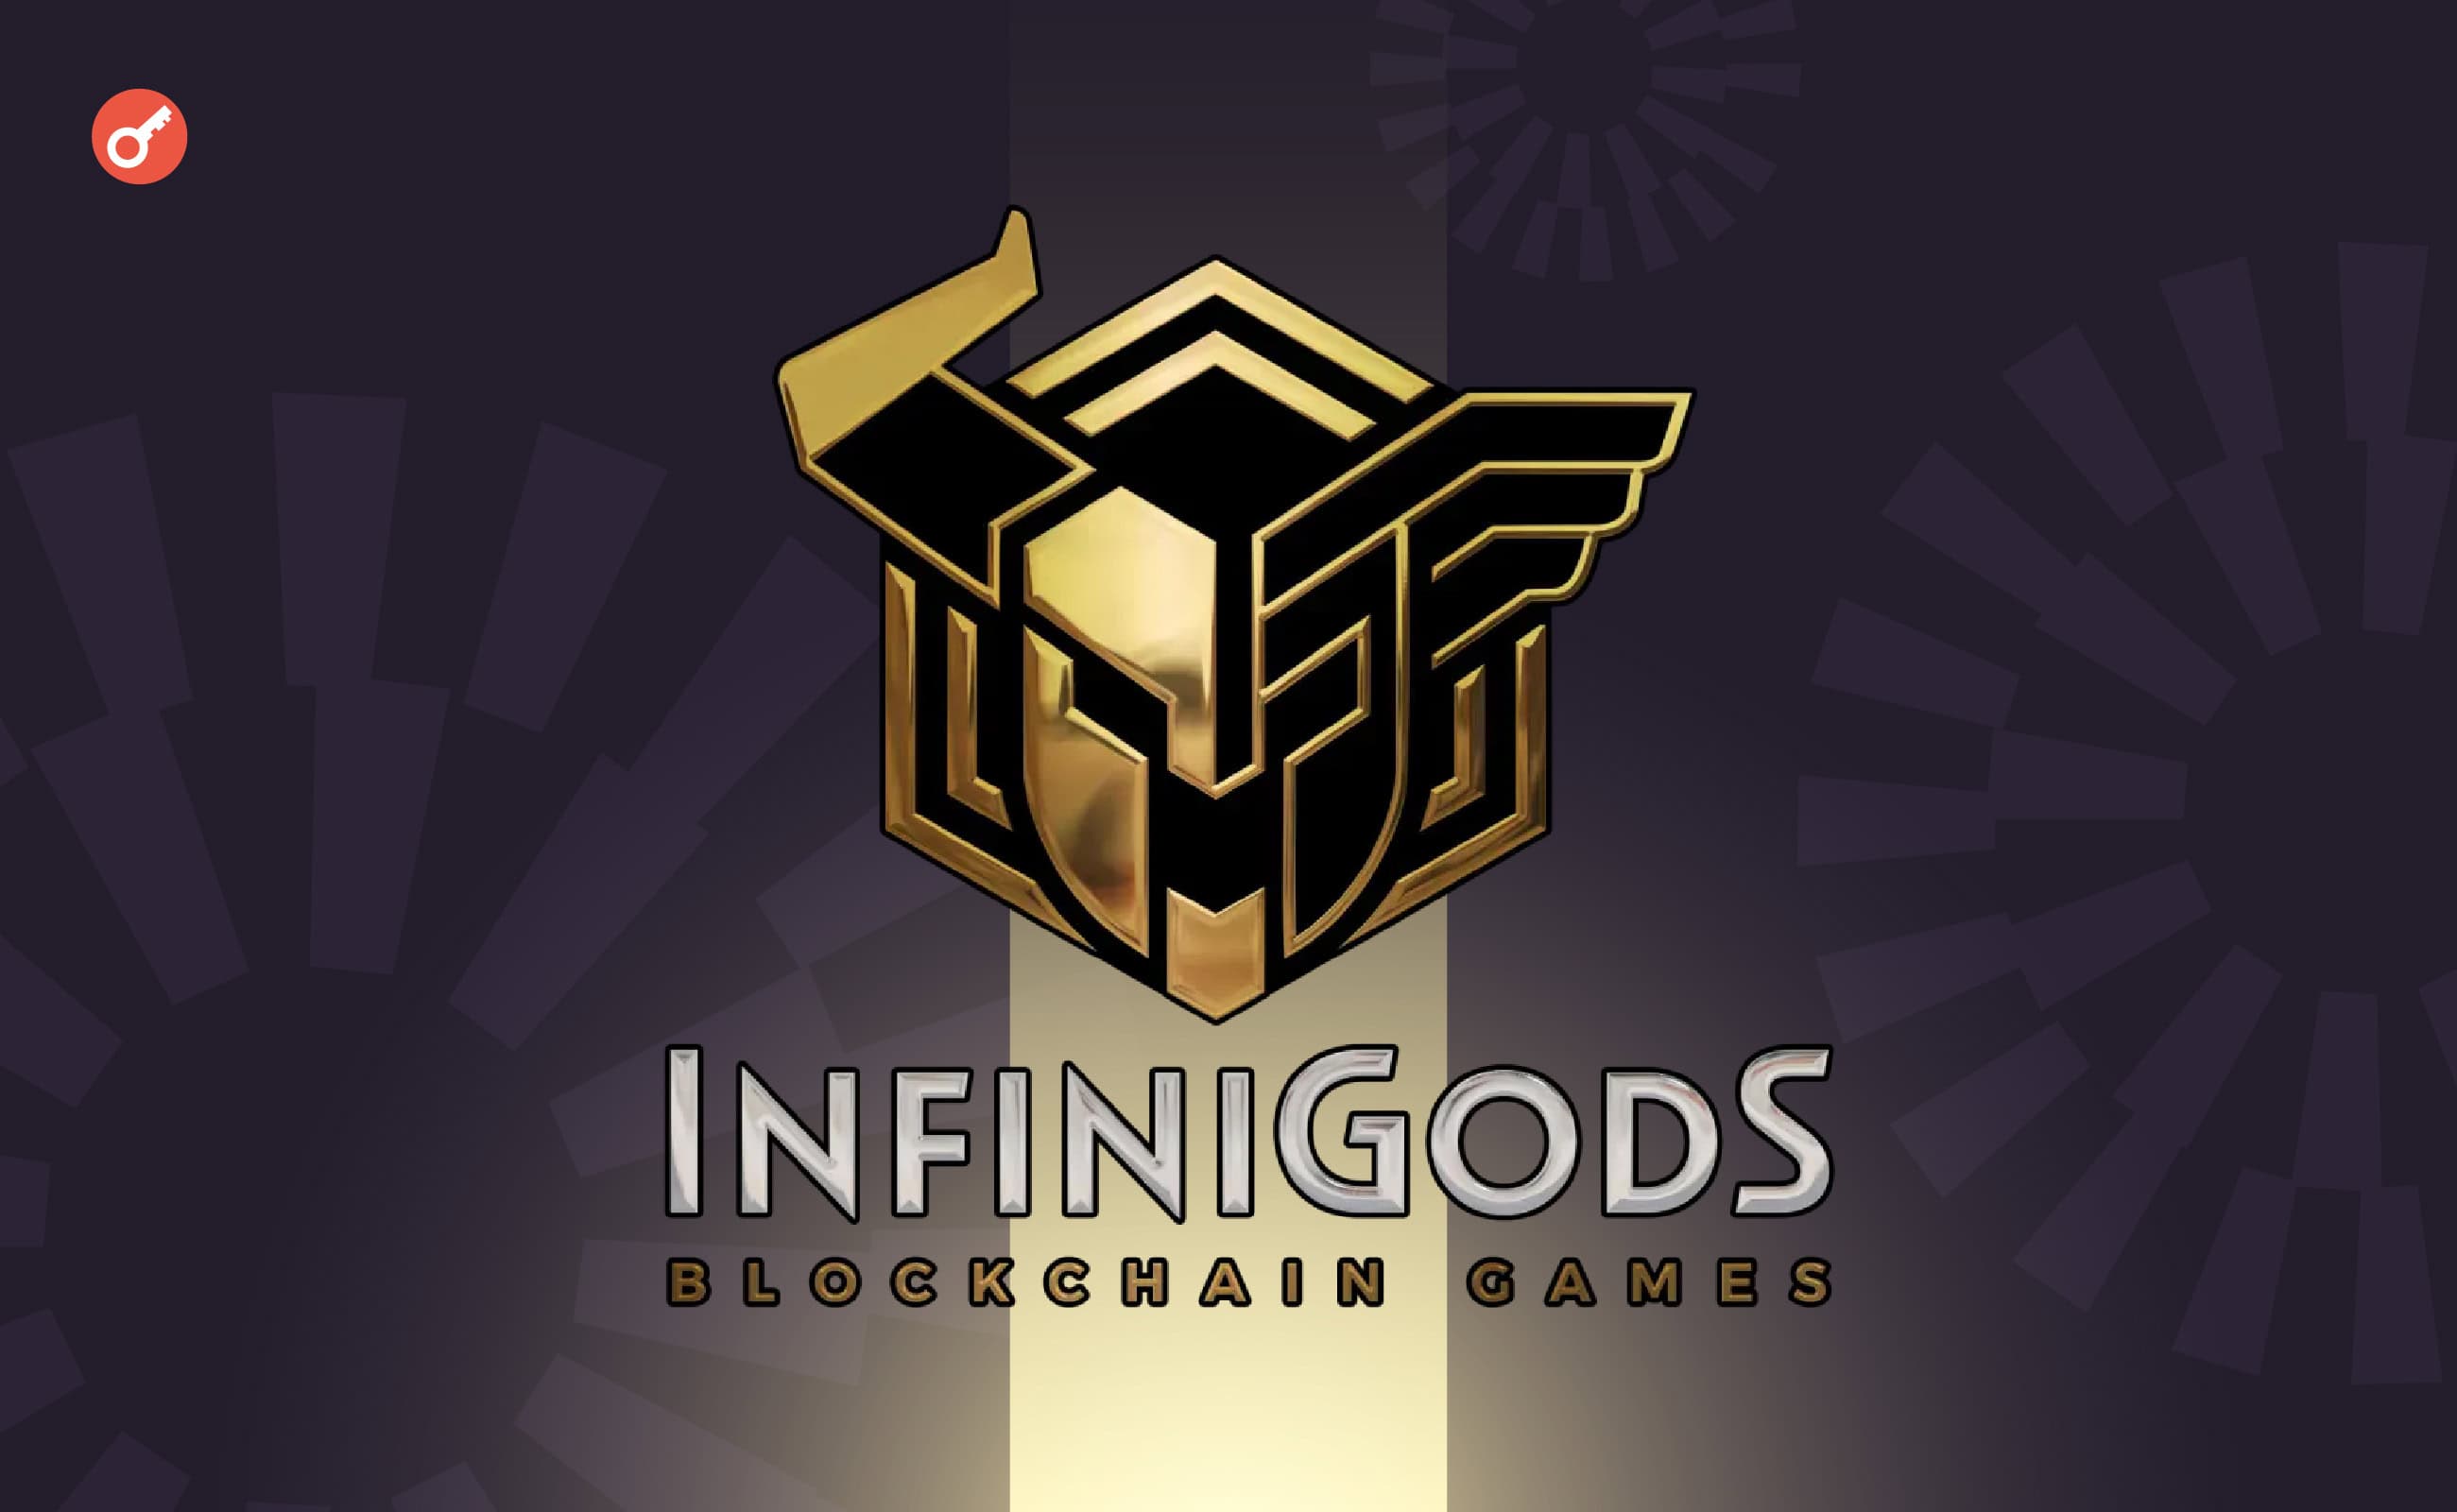 Projekt InfiniGods zamknął rundę finansowania serii A o wartości 8 milionów dolarów. Główny kolaż wiadomości.